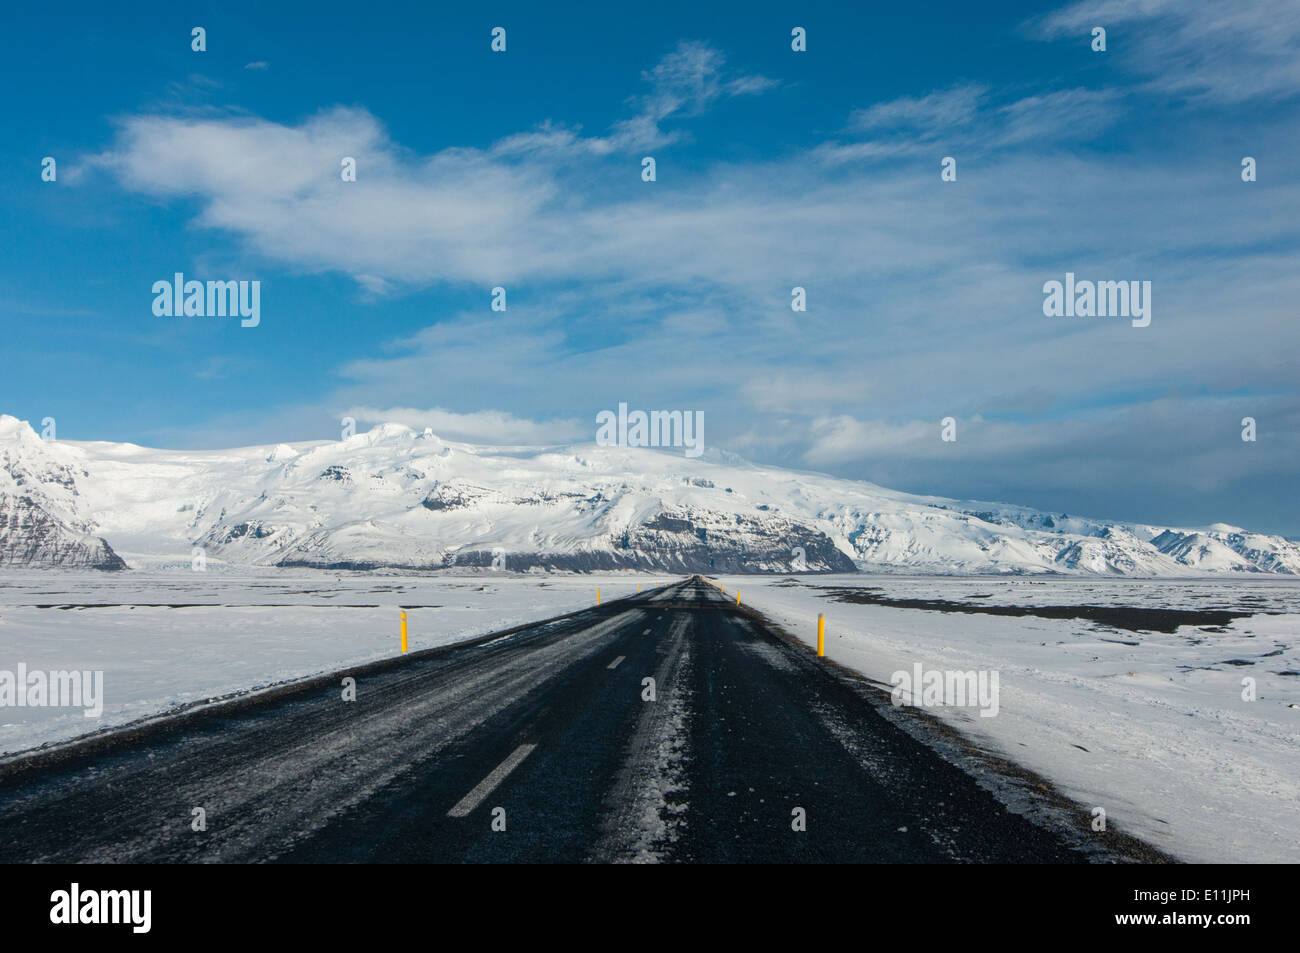 Déclenchement de la route - Islande Vatnajokull approchant, la plus grande calotte glaciaire de l'Europe. Banque D'Images